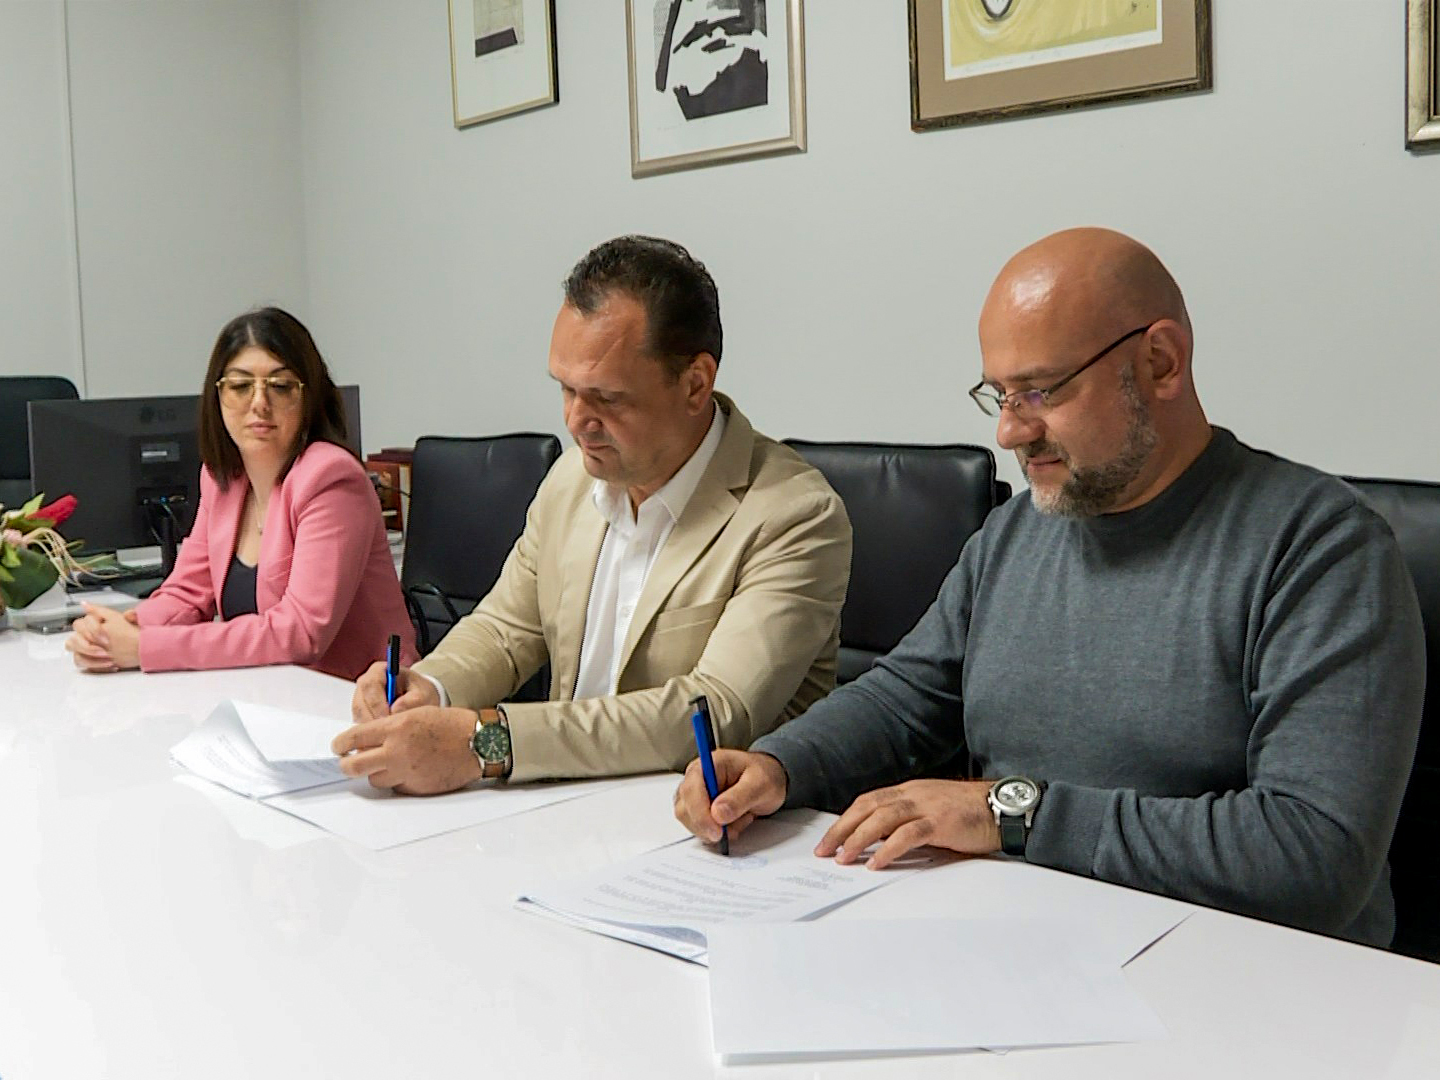 Potpisan sporazum o saradnji između NSZ i Filozofskog fakulteta